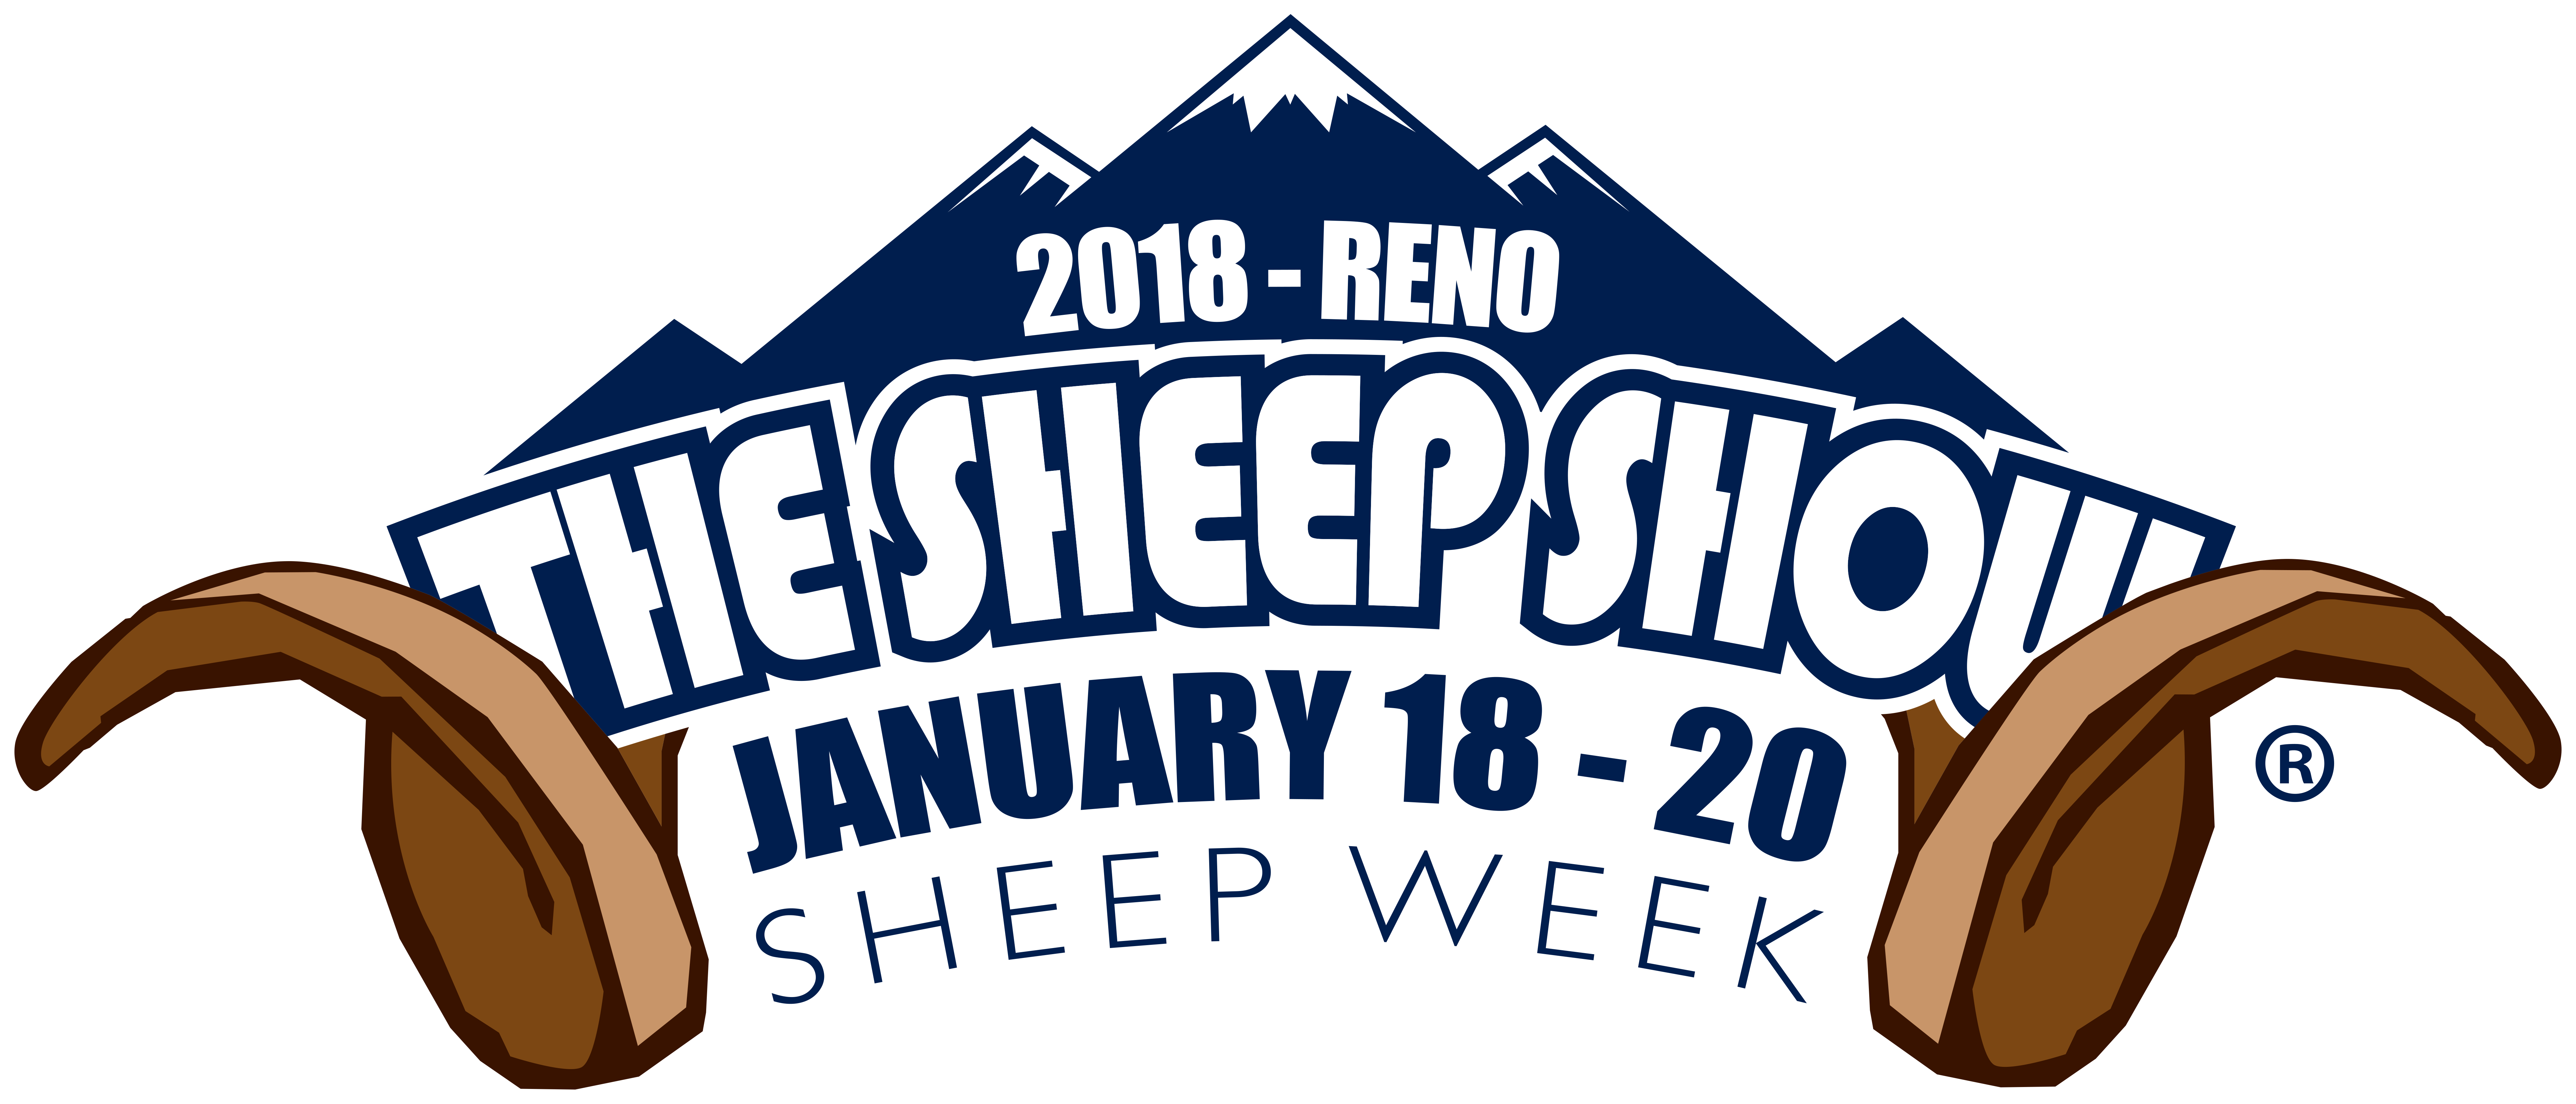 2018 Sheep Show Schedule - Reno Sheep Show 2018 (8040x3447)